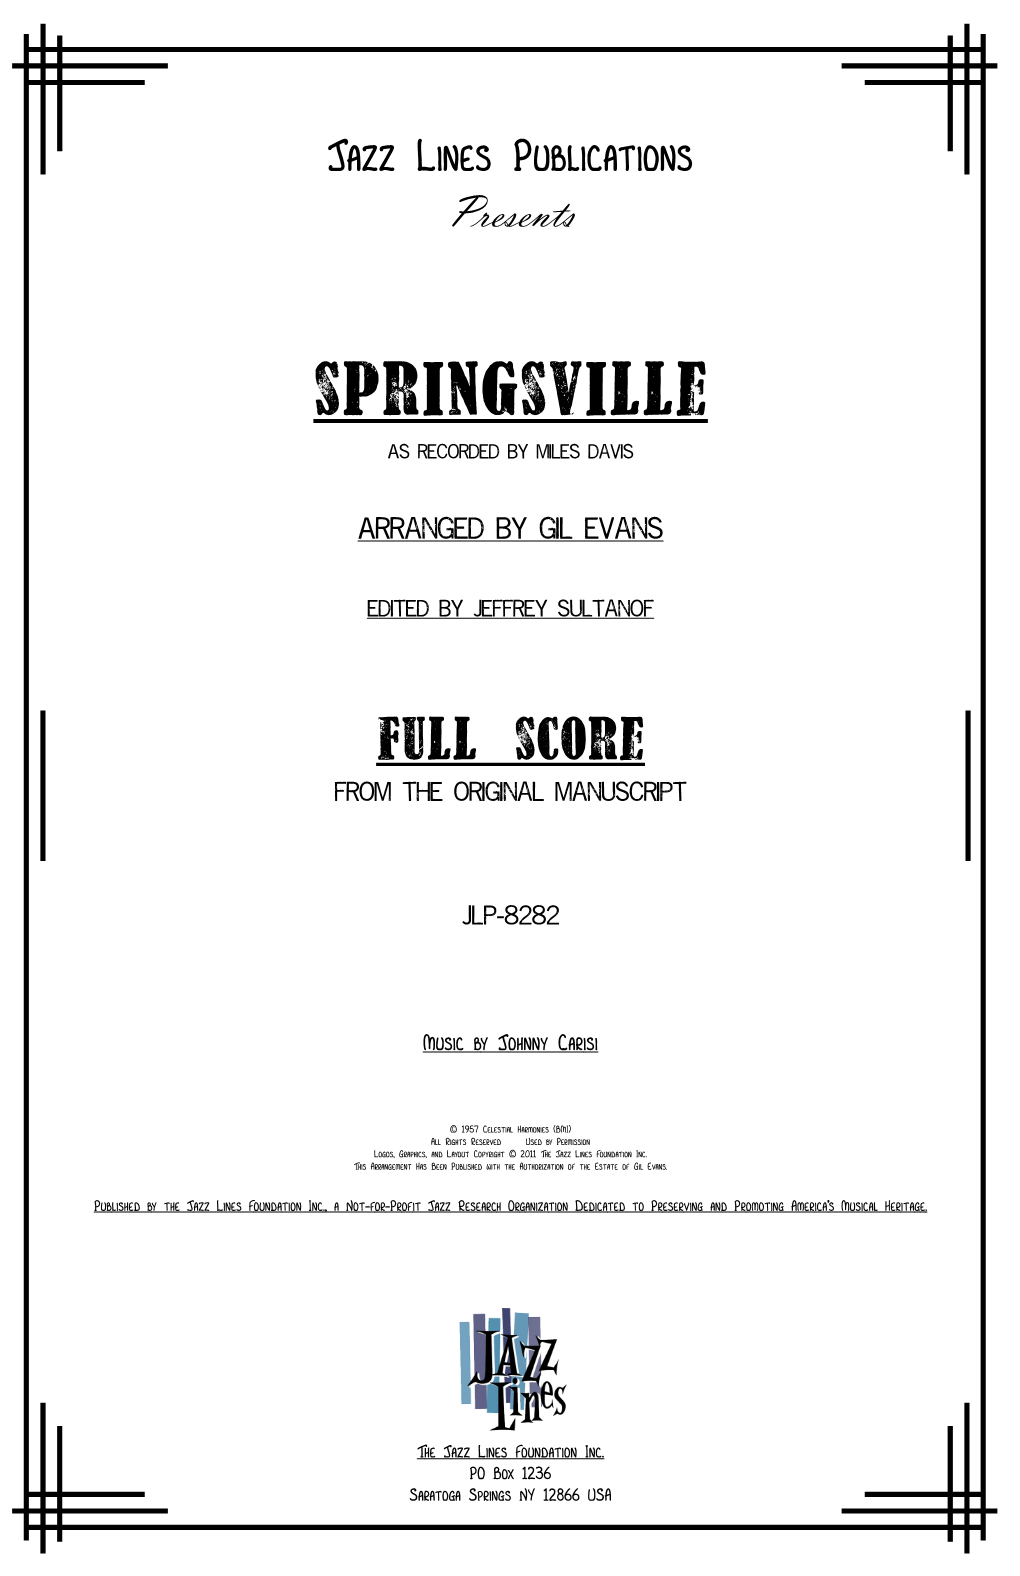 Springsville